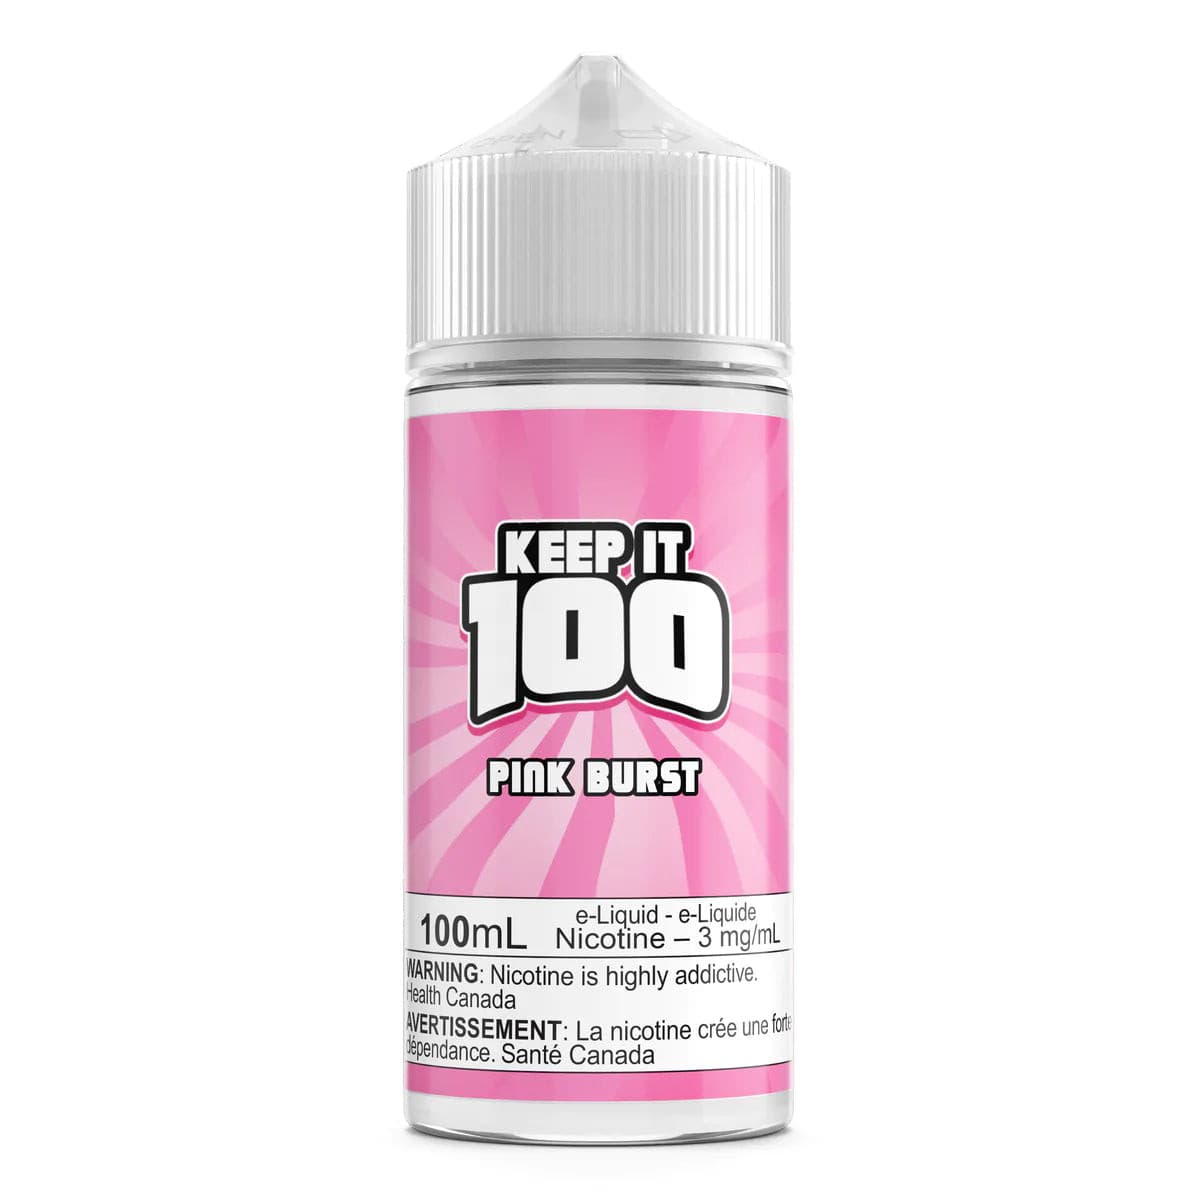 Pink Burst by Keep It 100 - Smoke FX